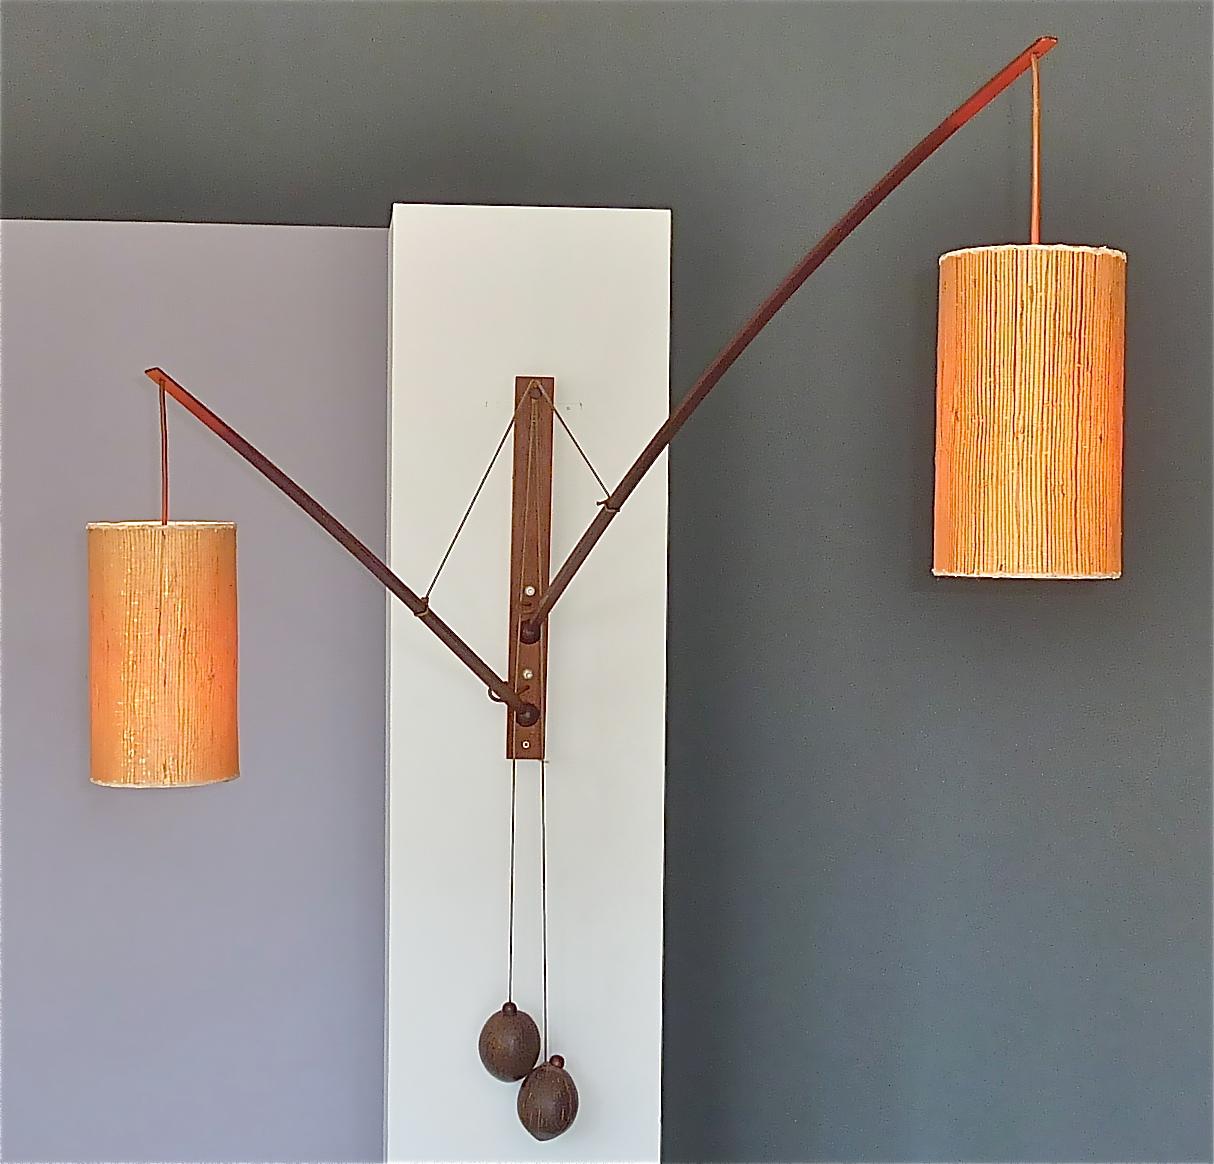 Scandinavian Modern Monumental Teak Wall Lights Lamp by Rupprecht Skrip Coconut Counterweights 1950s For Sale